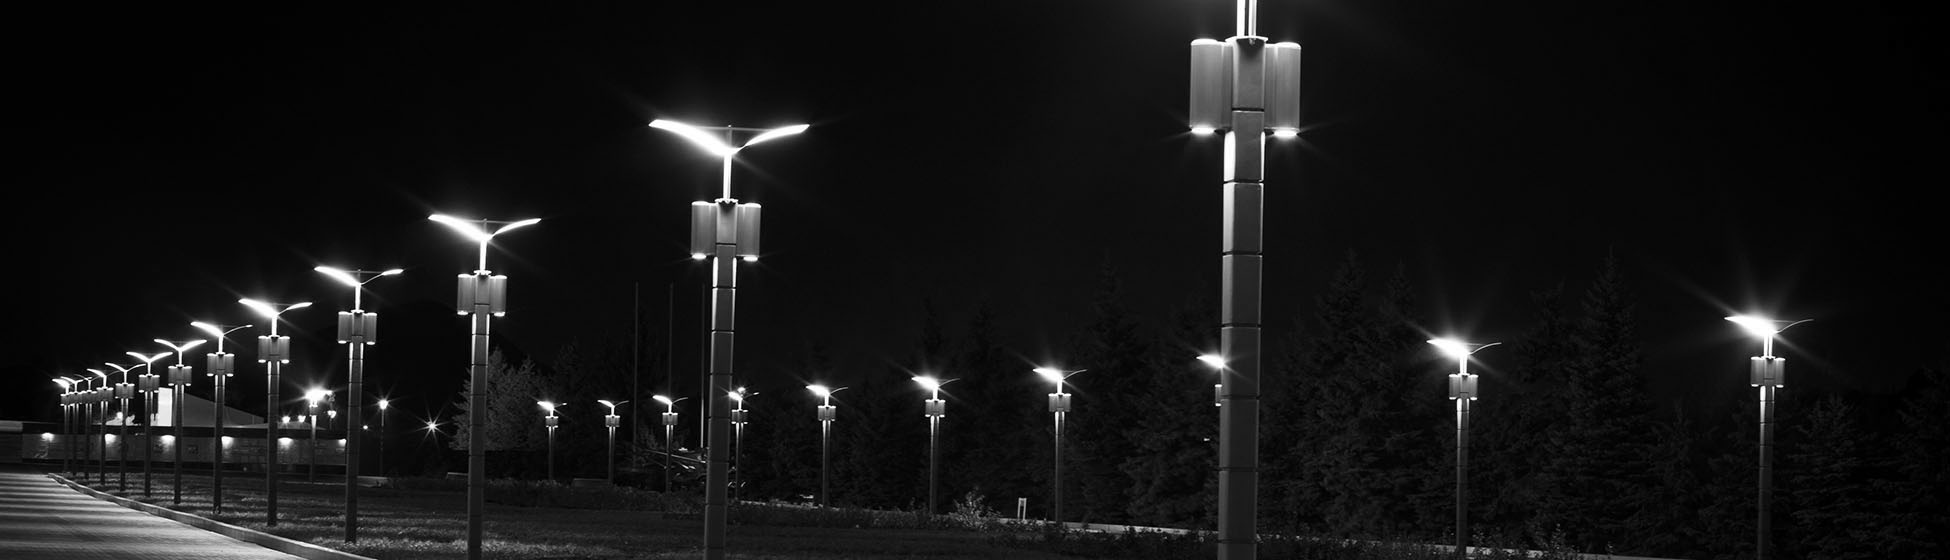 Lampe led eclairage public